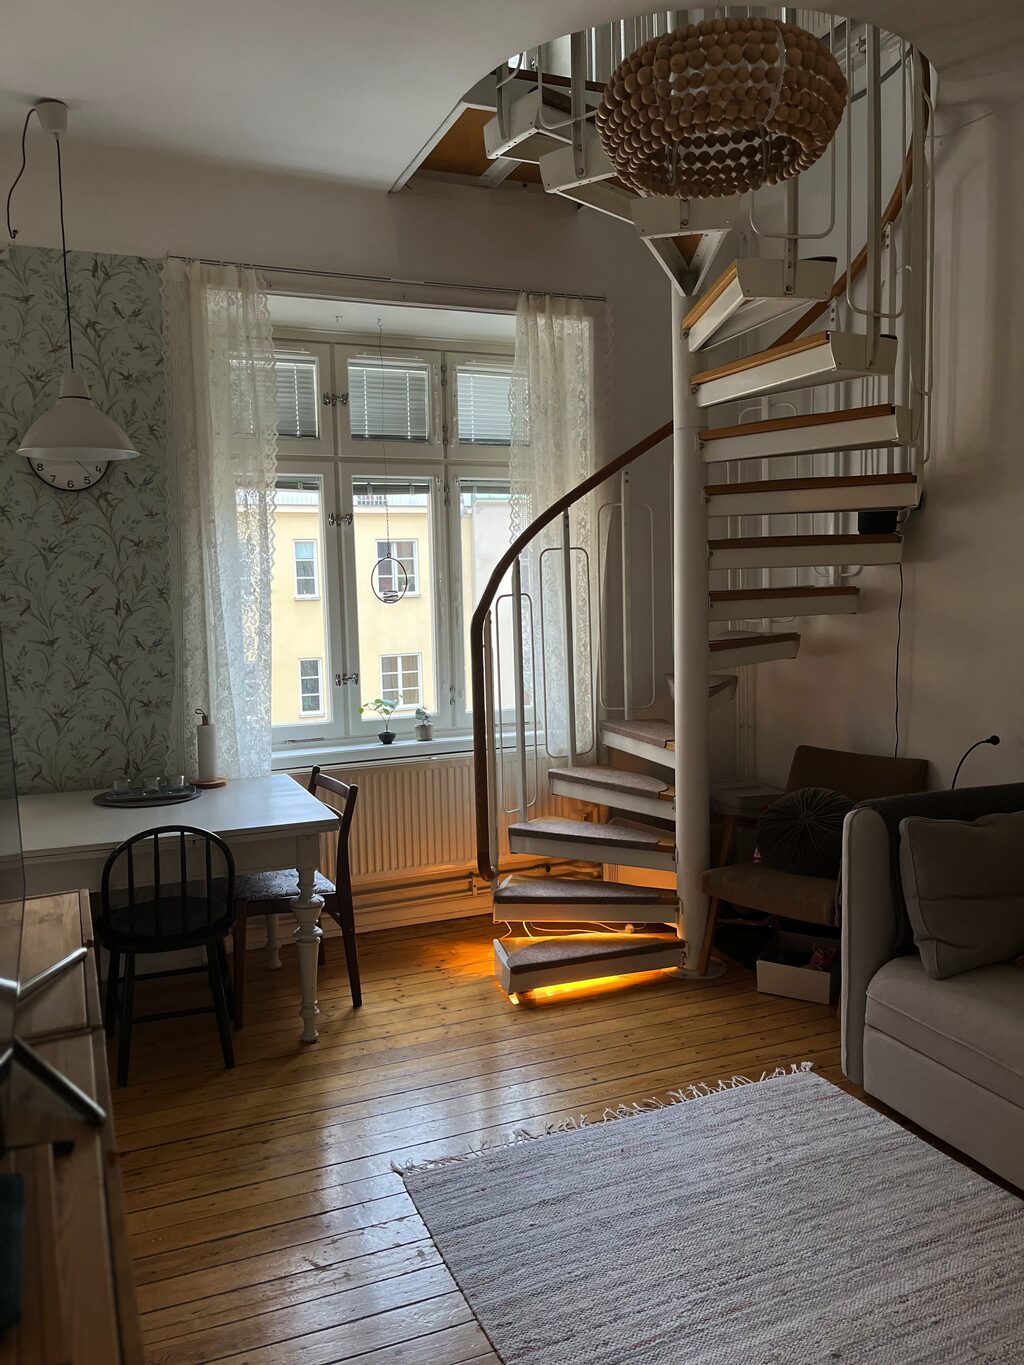 Lägenhetsbyte - Ölandsgatan 50, 116 63 Stockholm